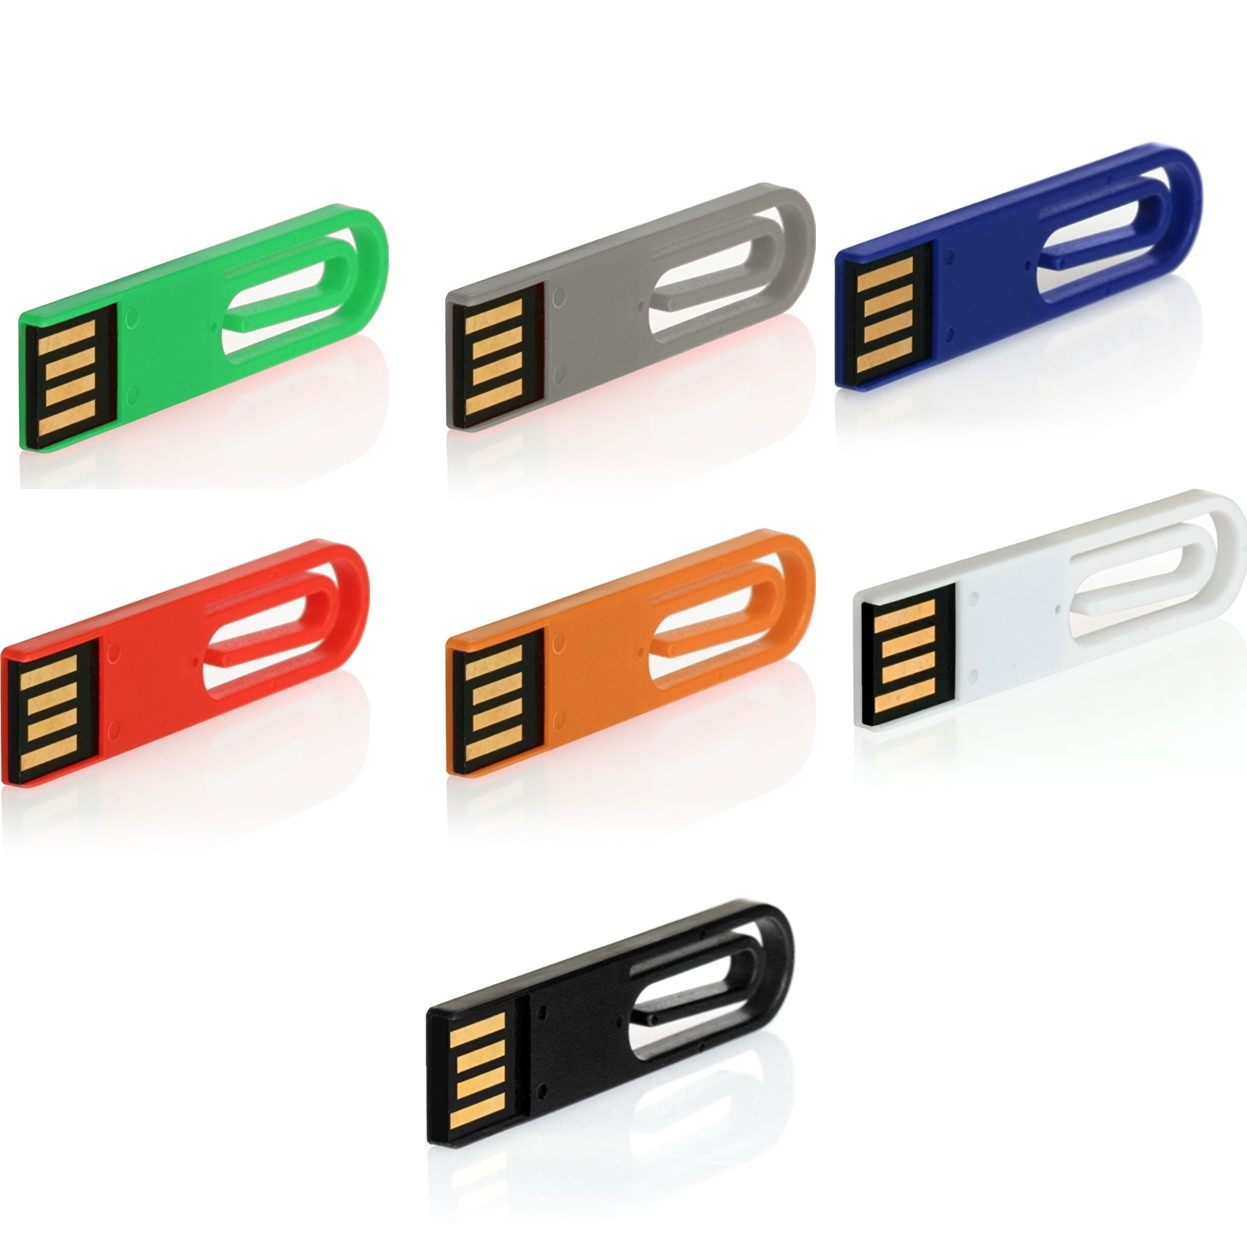 USB GERMANY ® eCLIP USB-Stick GB) (Grün, 8